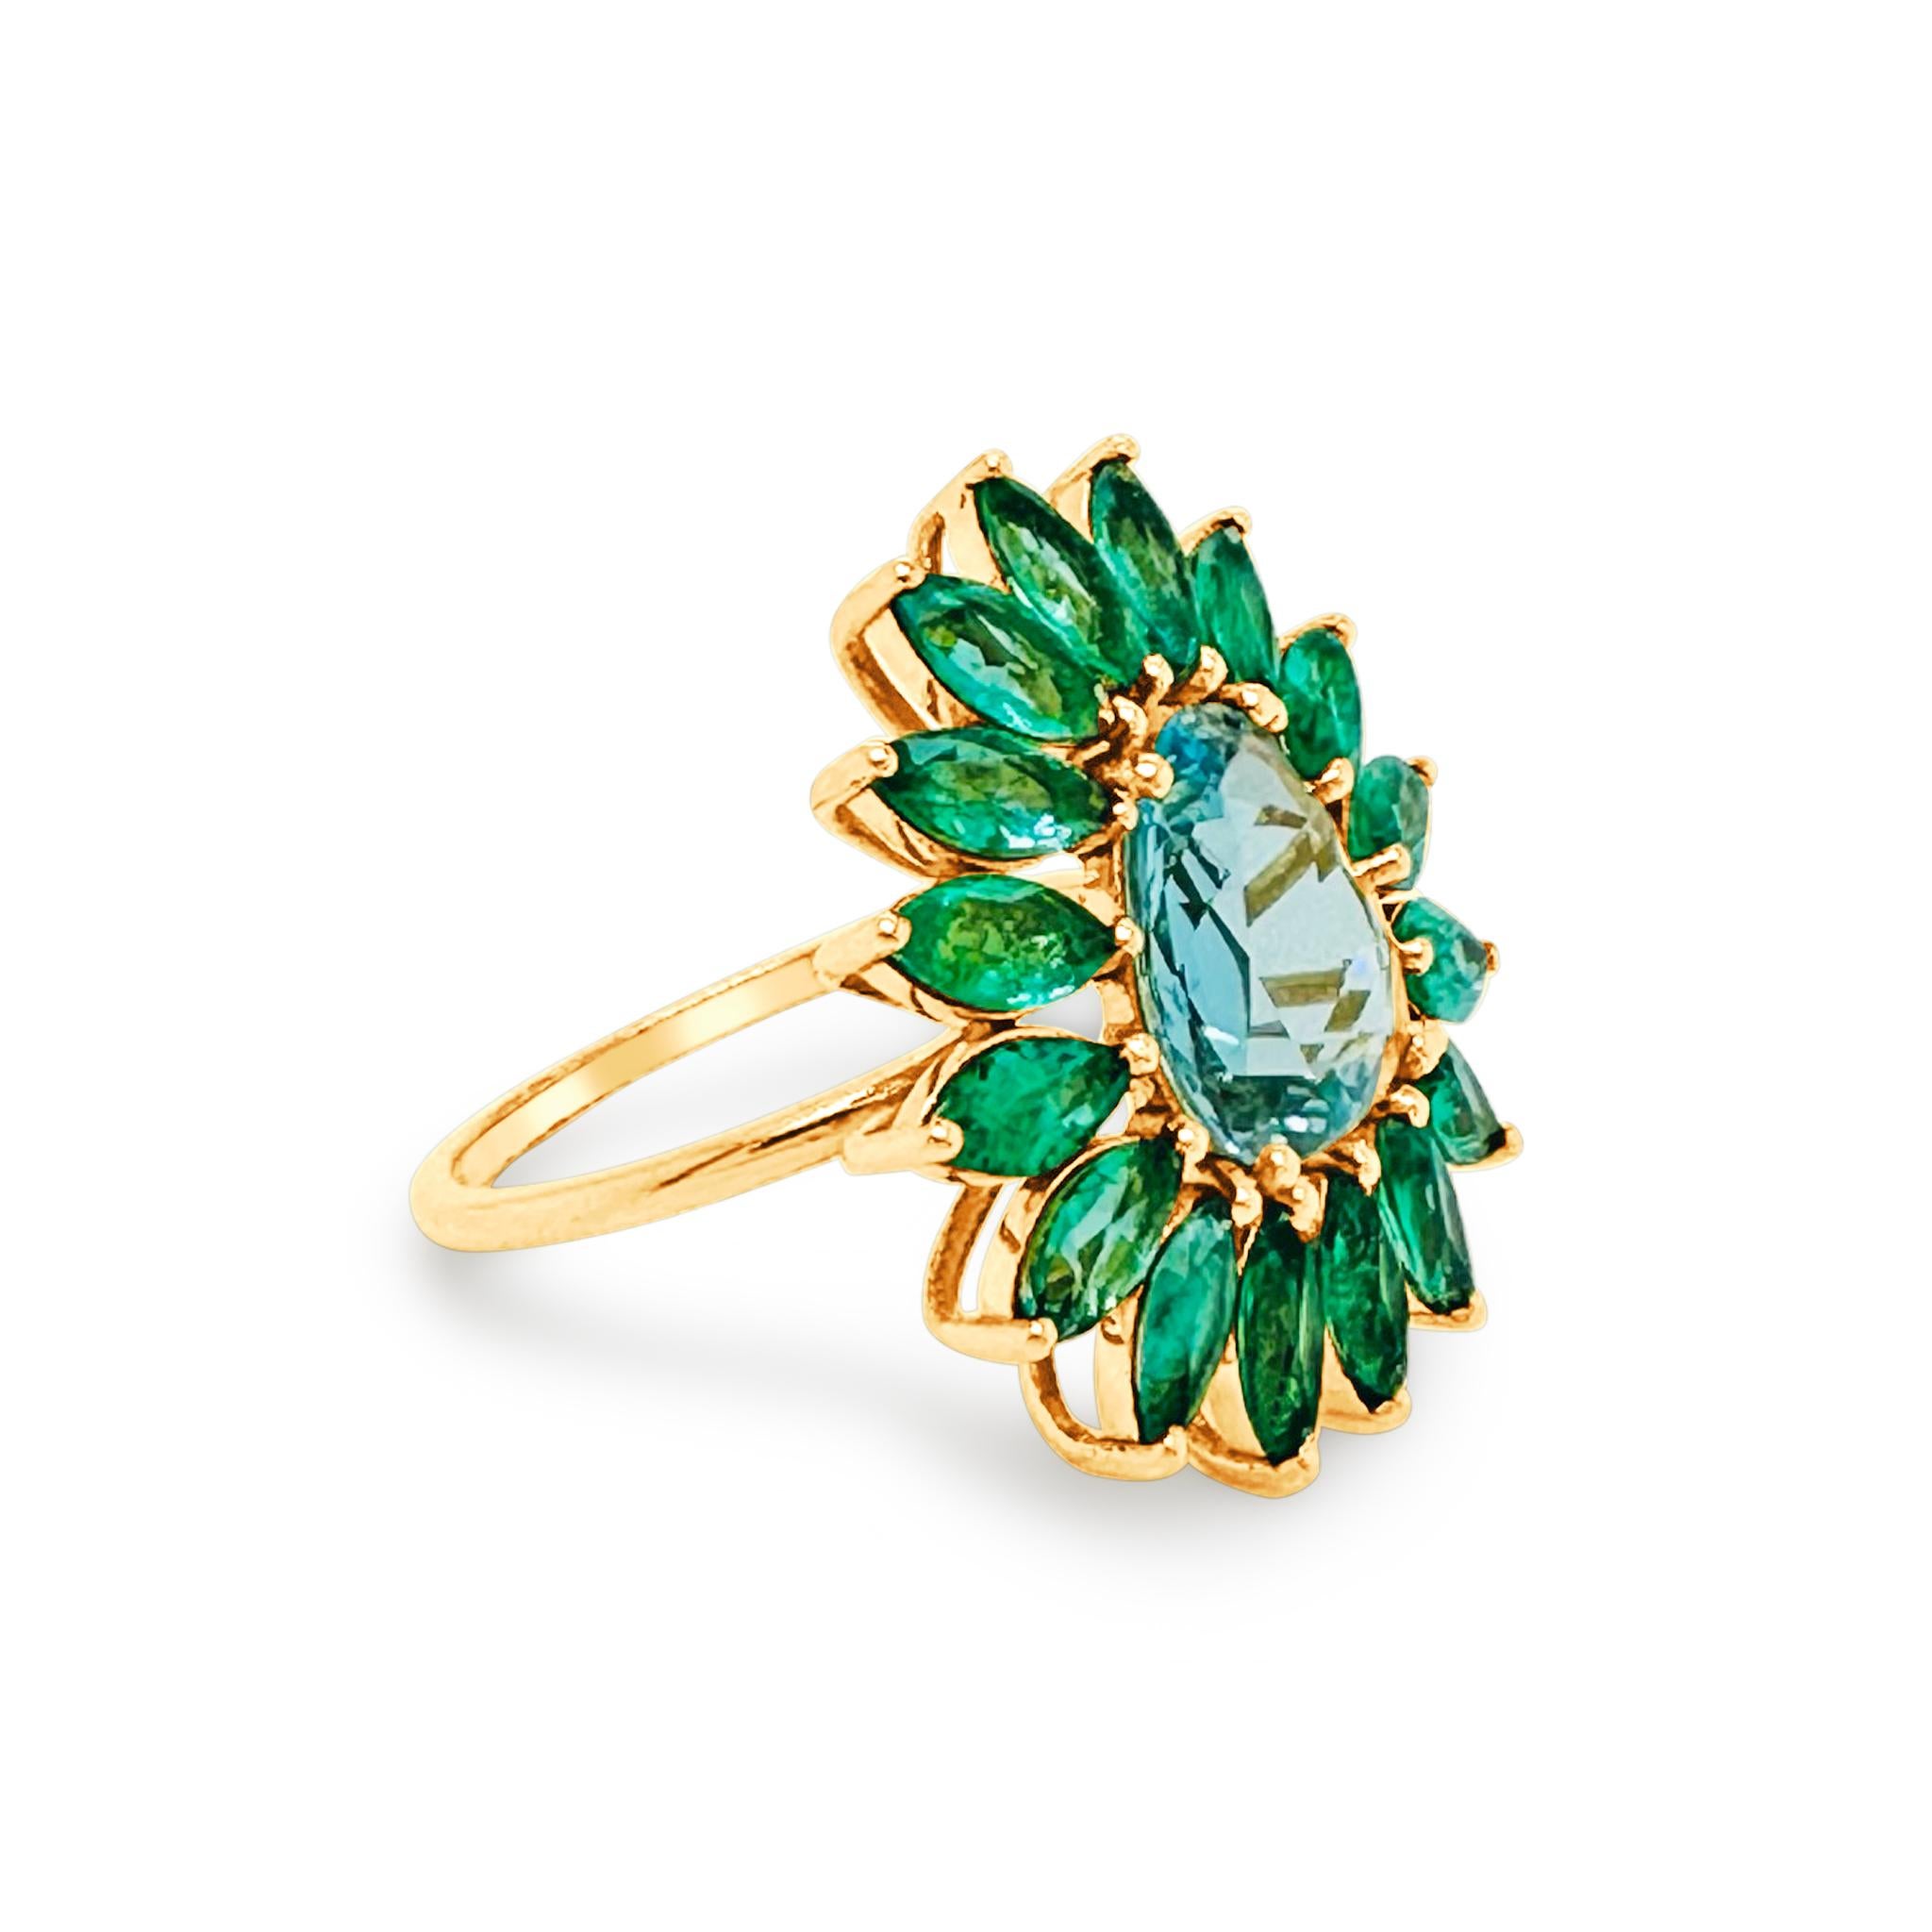 Tresor Edelstein Ring verfügt über 4,88 Karat Edelstein in 18k Gelbgold. Die Ringe sind eine Ode an die luxuriöse und doch klassische Schönheit mit funkelnden Diamanten. Ihr zeitgemäßes und modernes Design macht sie vielseitig einsetzbar. Der Ring